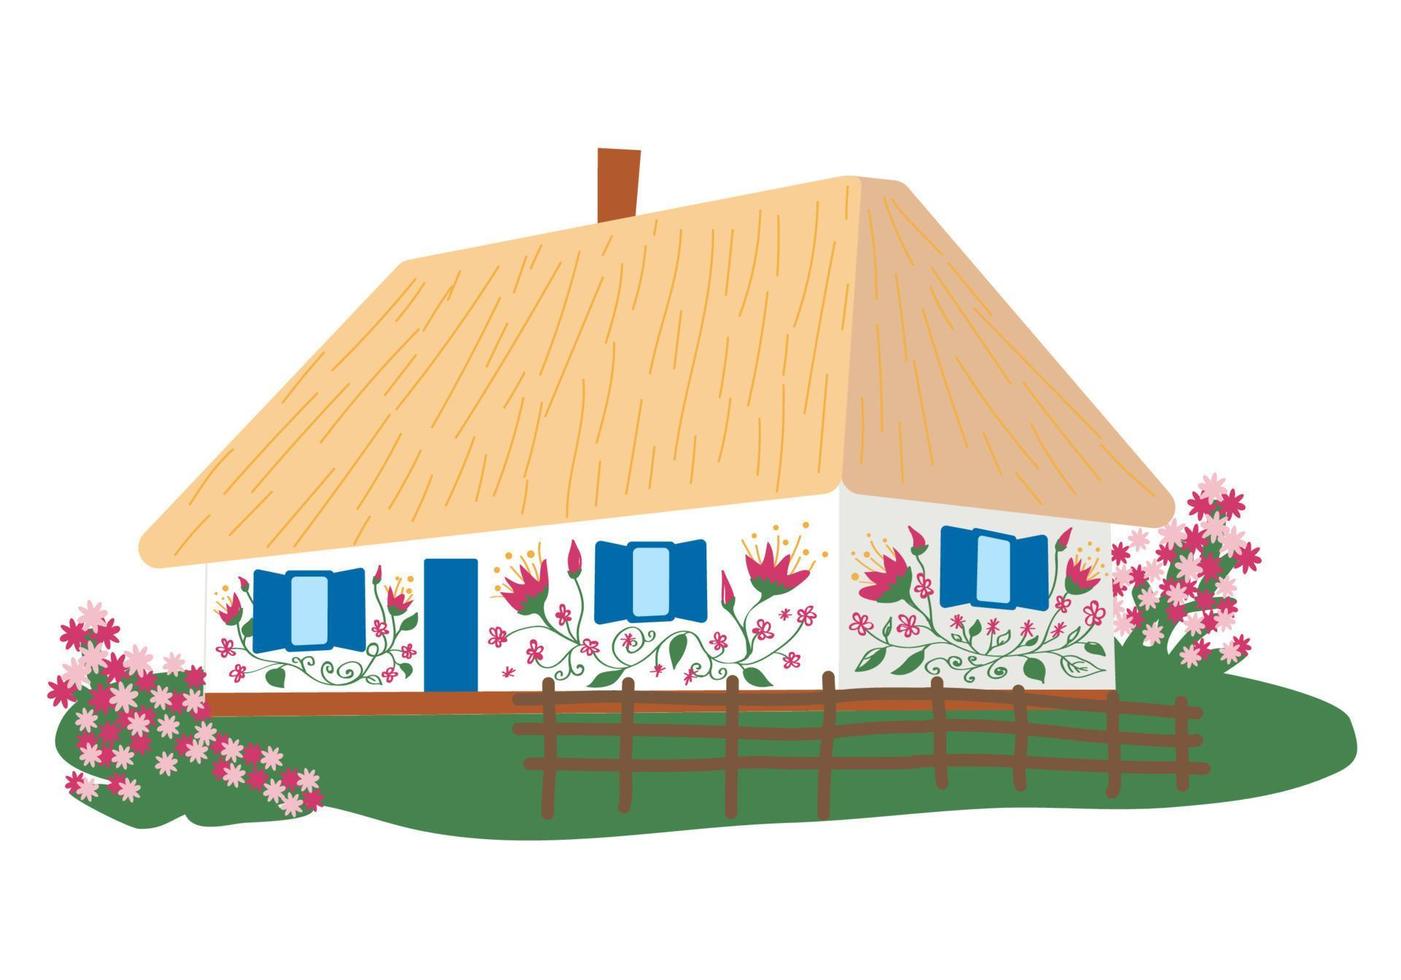 casa rural ucraniana com cerca de madeira. casa tradicional ucraniana com paredes brancas, telhado de palha, jardim de flores e cerca de vime. vetor